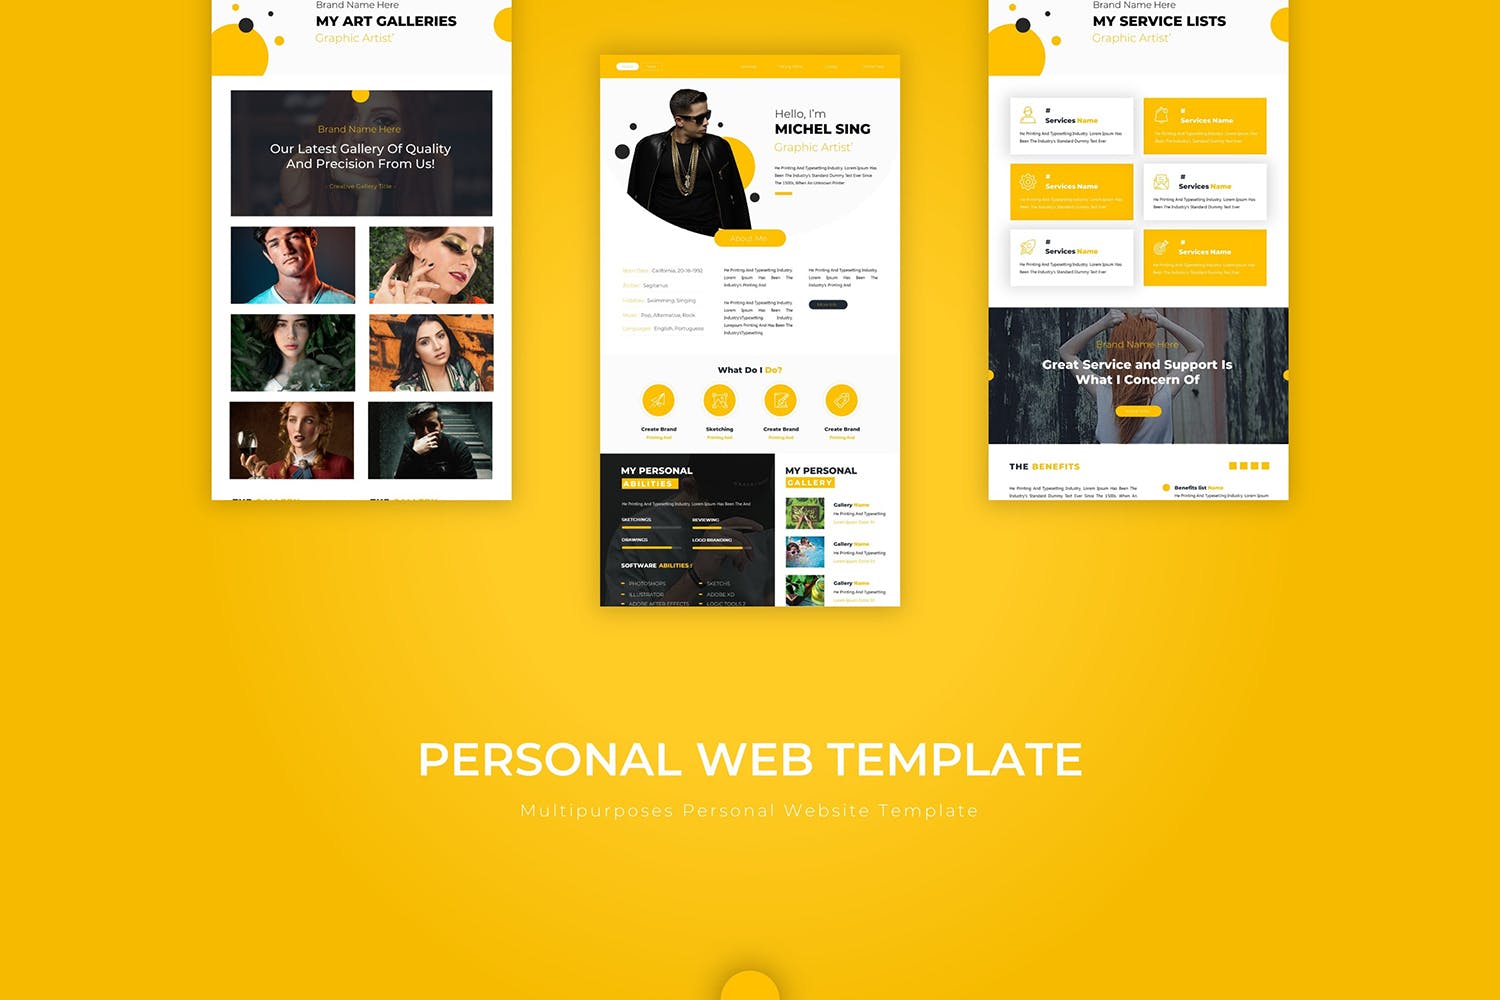 橙色设计风格设计师网站PSD模板 Personal | PSD Web Template插图(2)